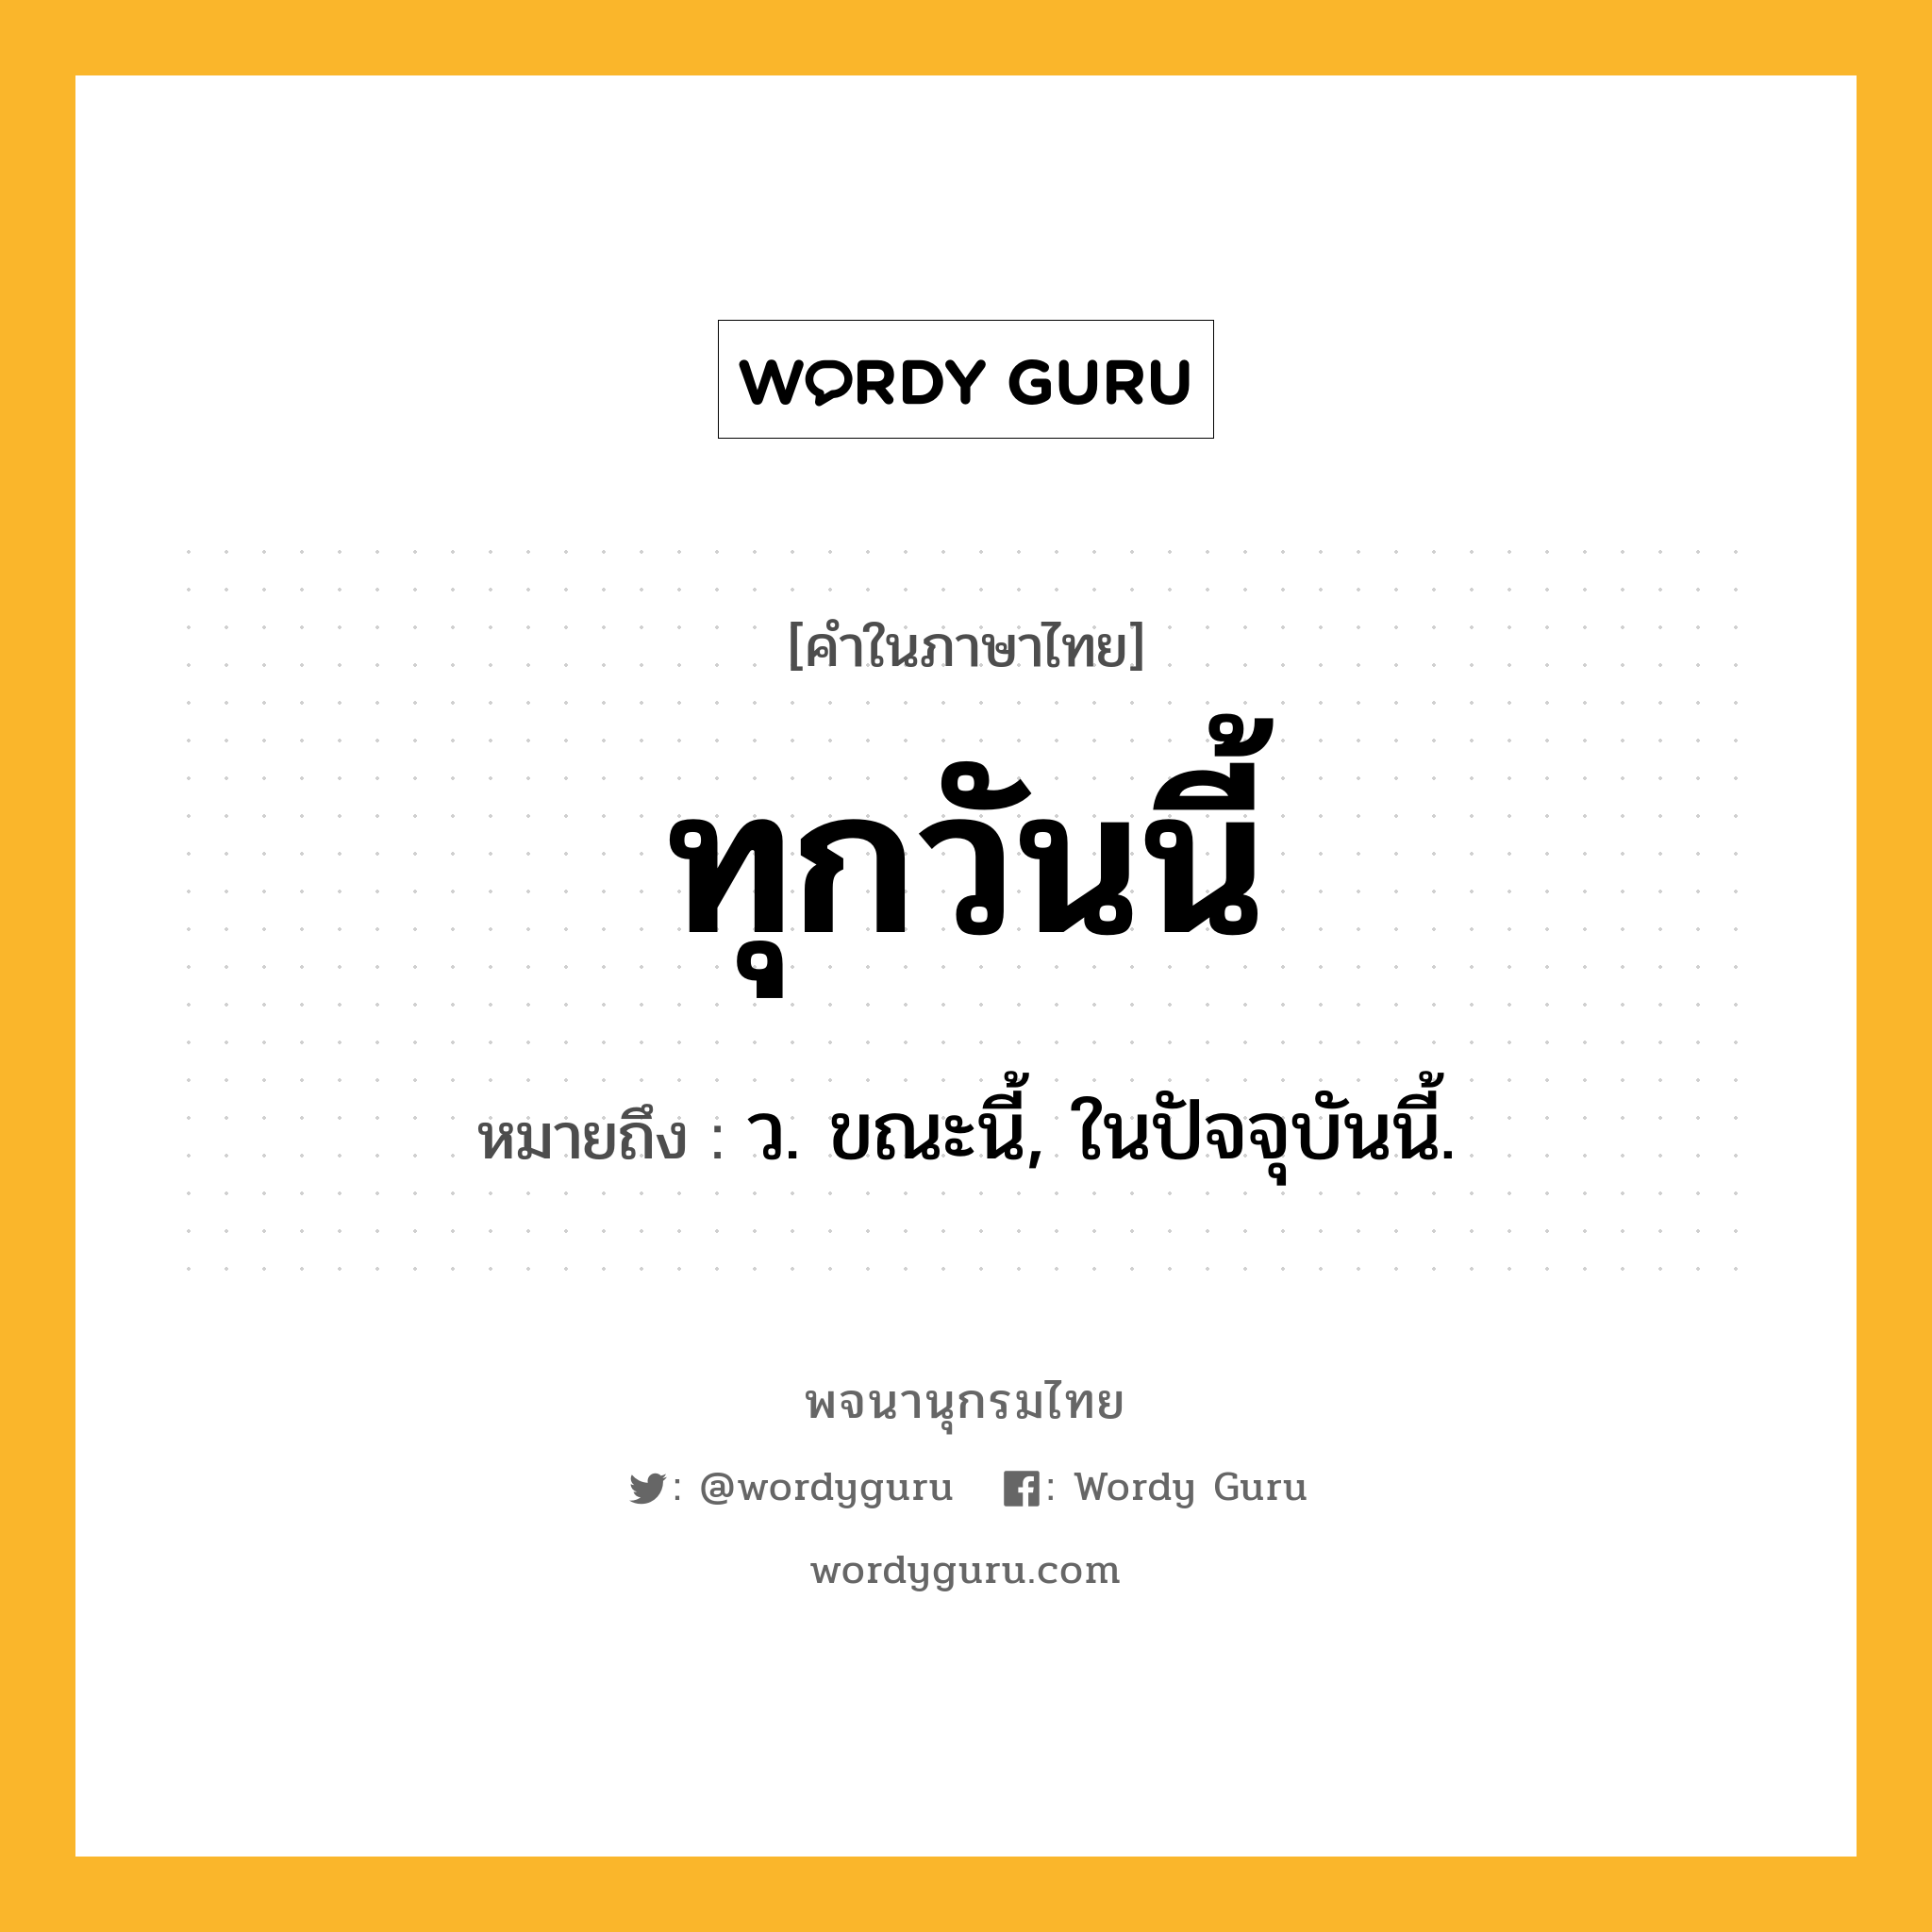 ทุกวันนี้ หมายถึงอะไร?, คำในภาษาไทย ทุกวันนี้ หมายถึง ว. ขณะนี้, ในปัจจุบันนี้.